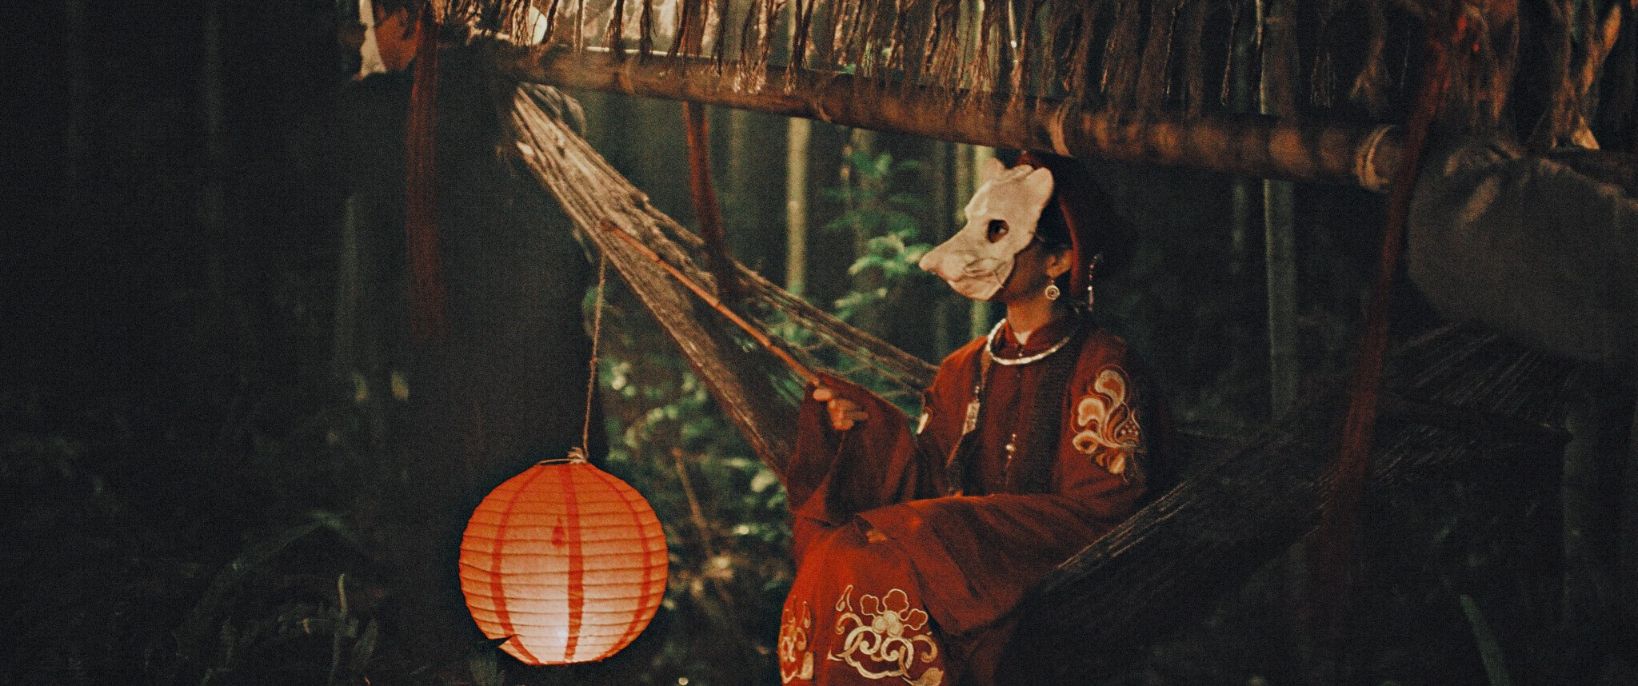 Kẻ Ăn Hồn 4 1 Phim điện ảnh Kẻ Ăn Hồn và vẻ đẹp bản địa của làng Địa Ngục